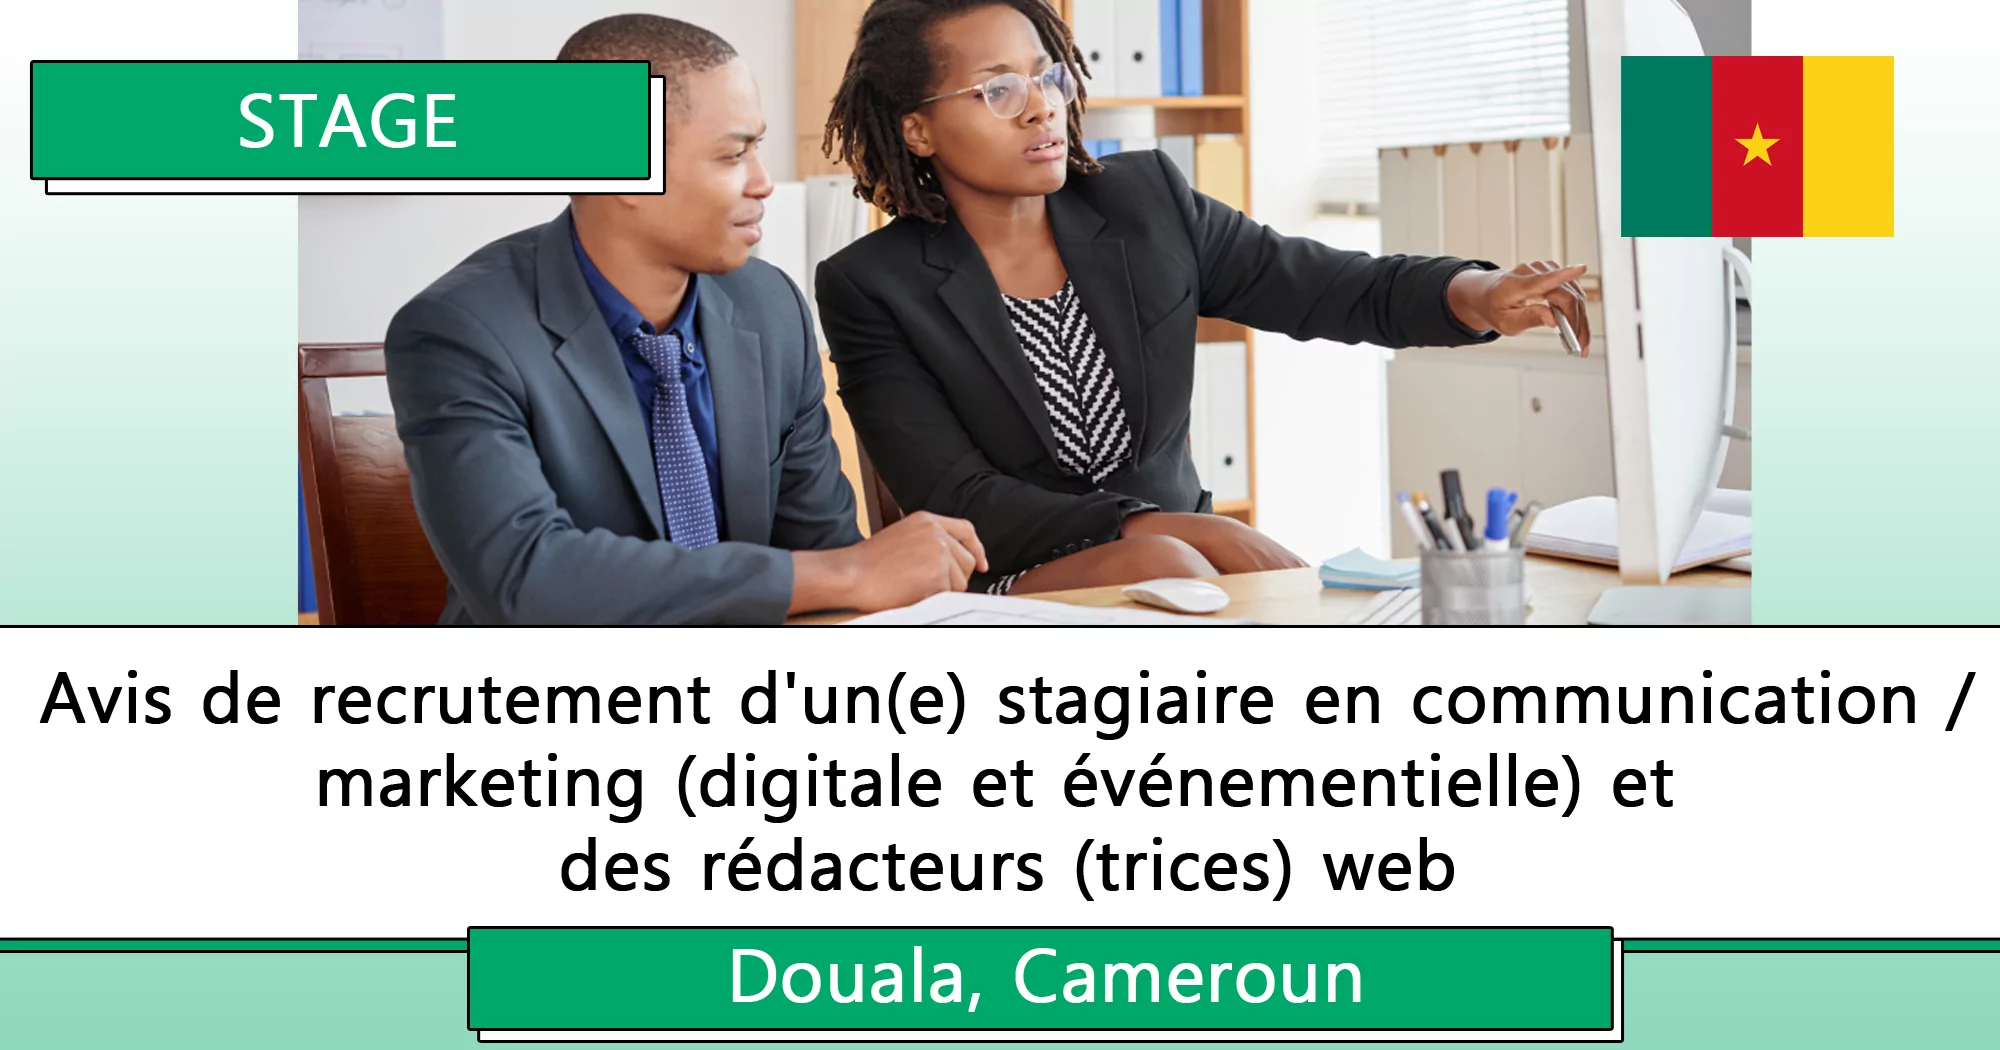 Avis de recrutement d’un(e) stagiaire en communication/marketing (digitale et événementielle) et des rédacteurs (trices) web, Douala, Cameroun